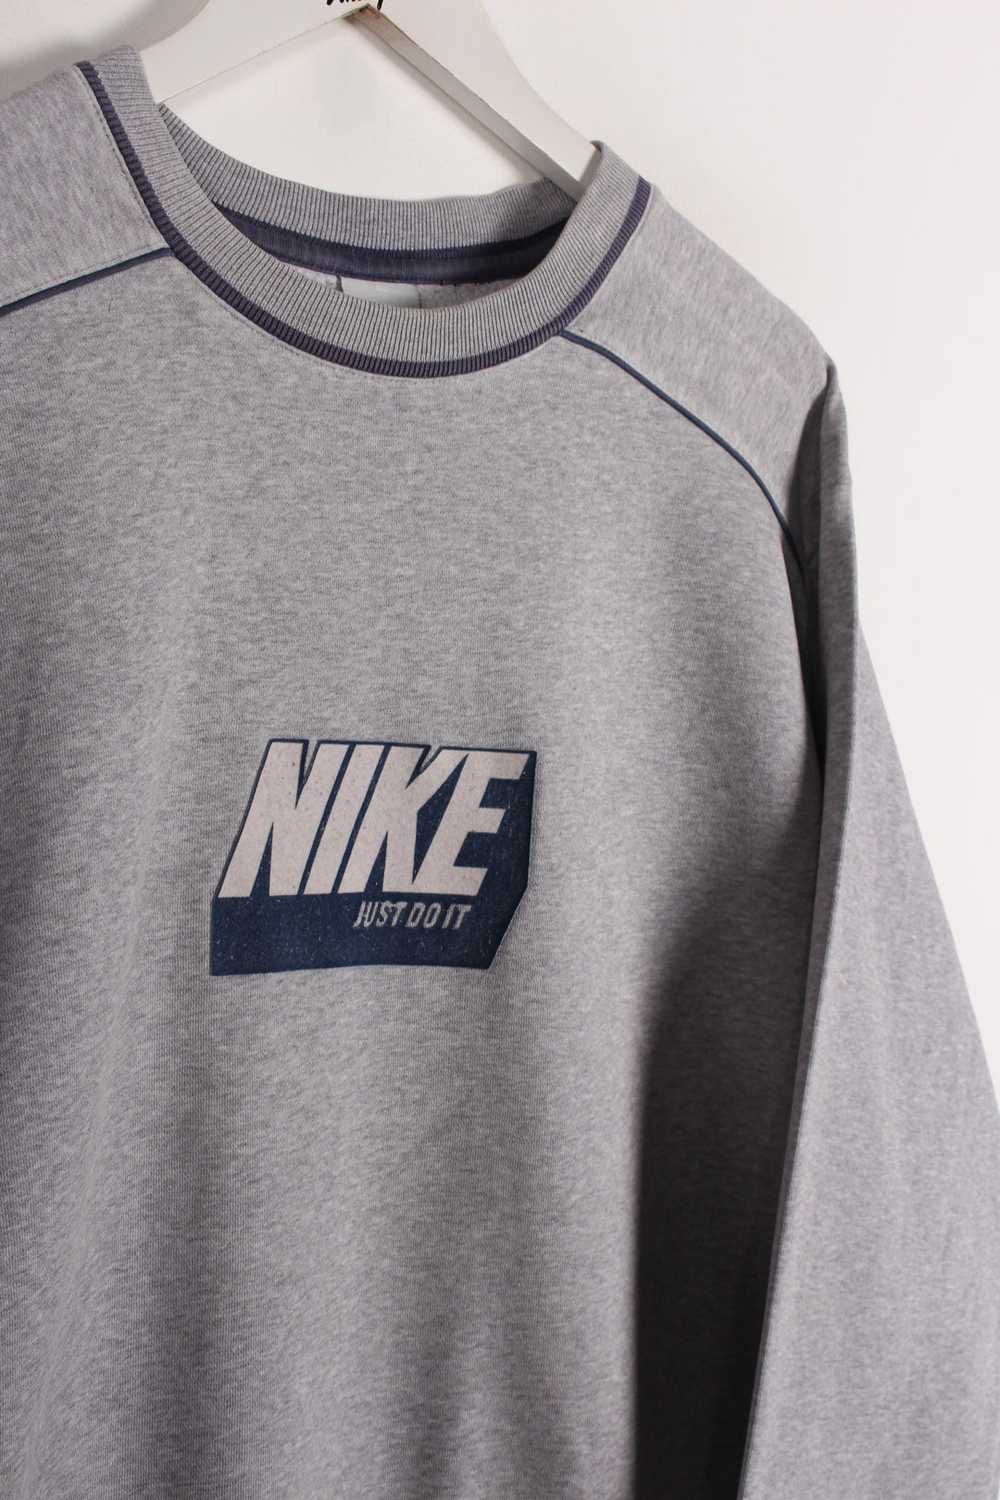 00's Nike Sweatshirt Large - image 2